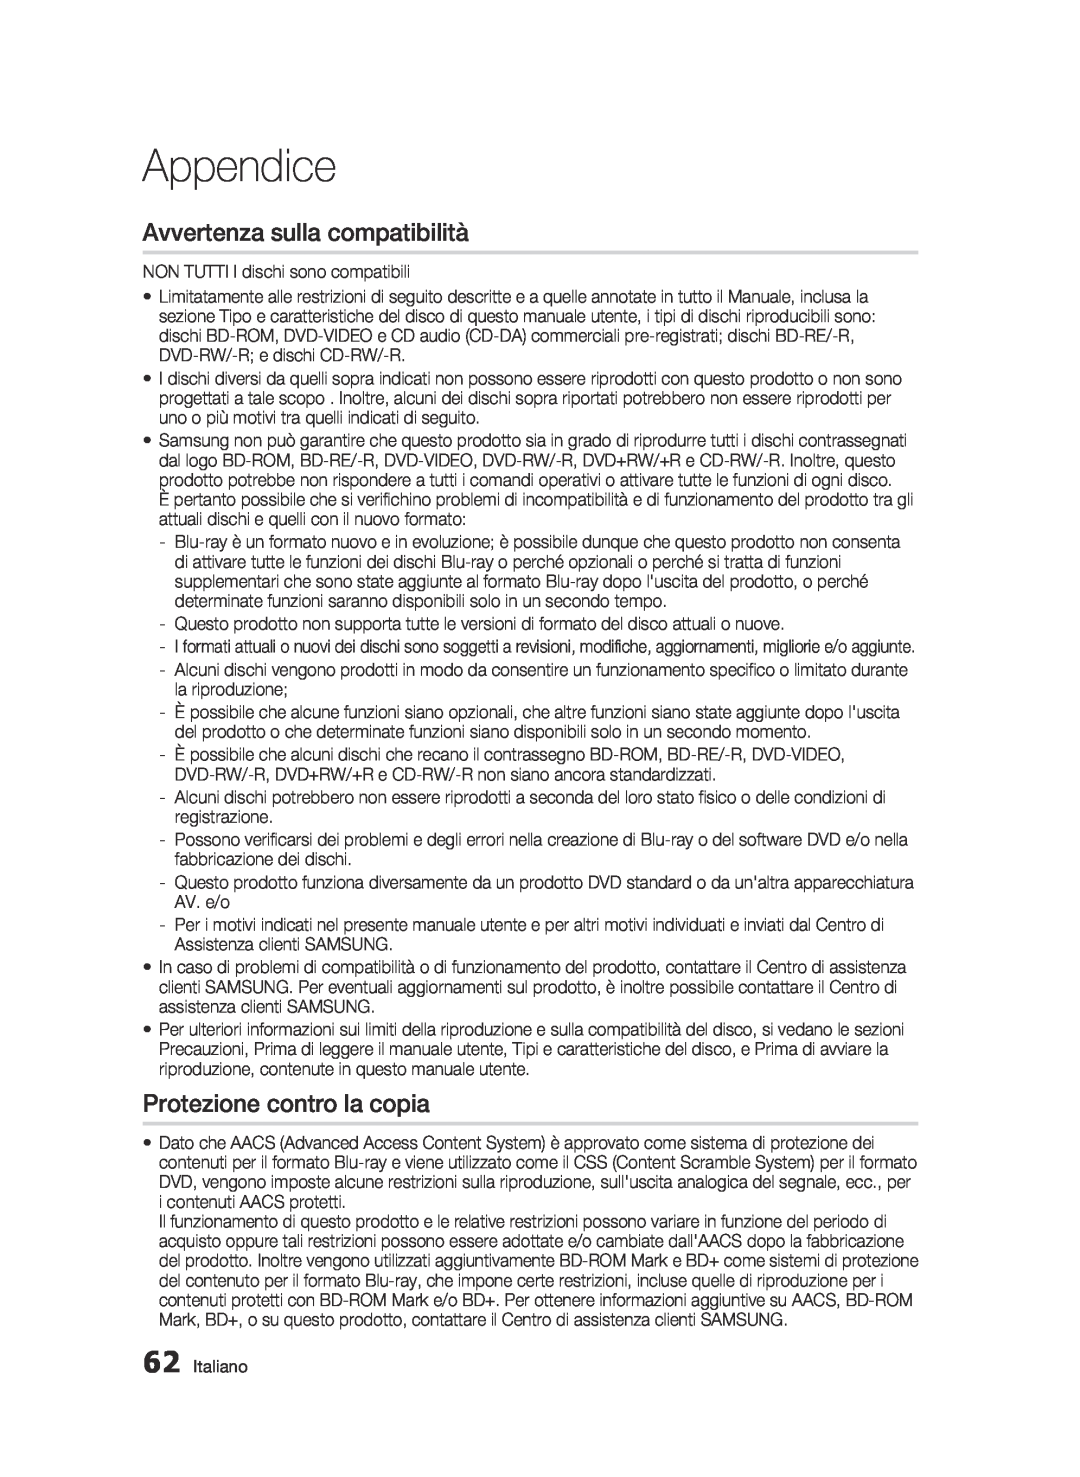 Samsung BD-C6500/XEF manual Avvertenza sulla compatibilità, Protezione contro la copia, Appendice 